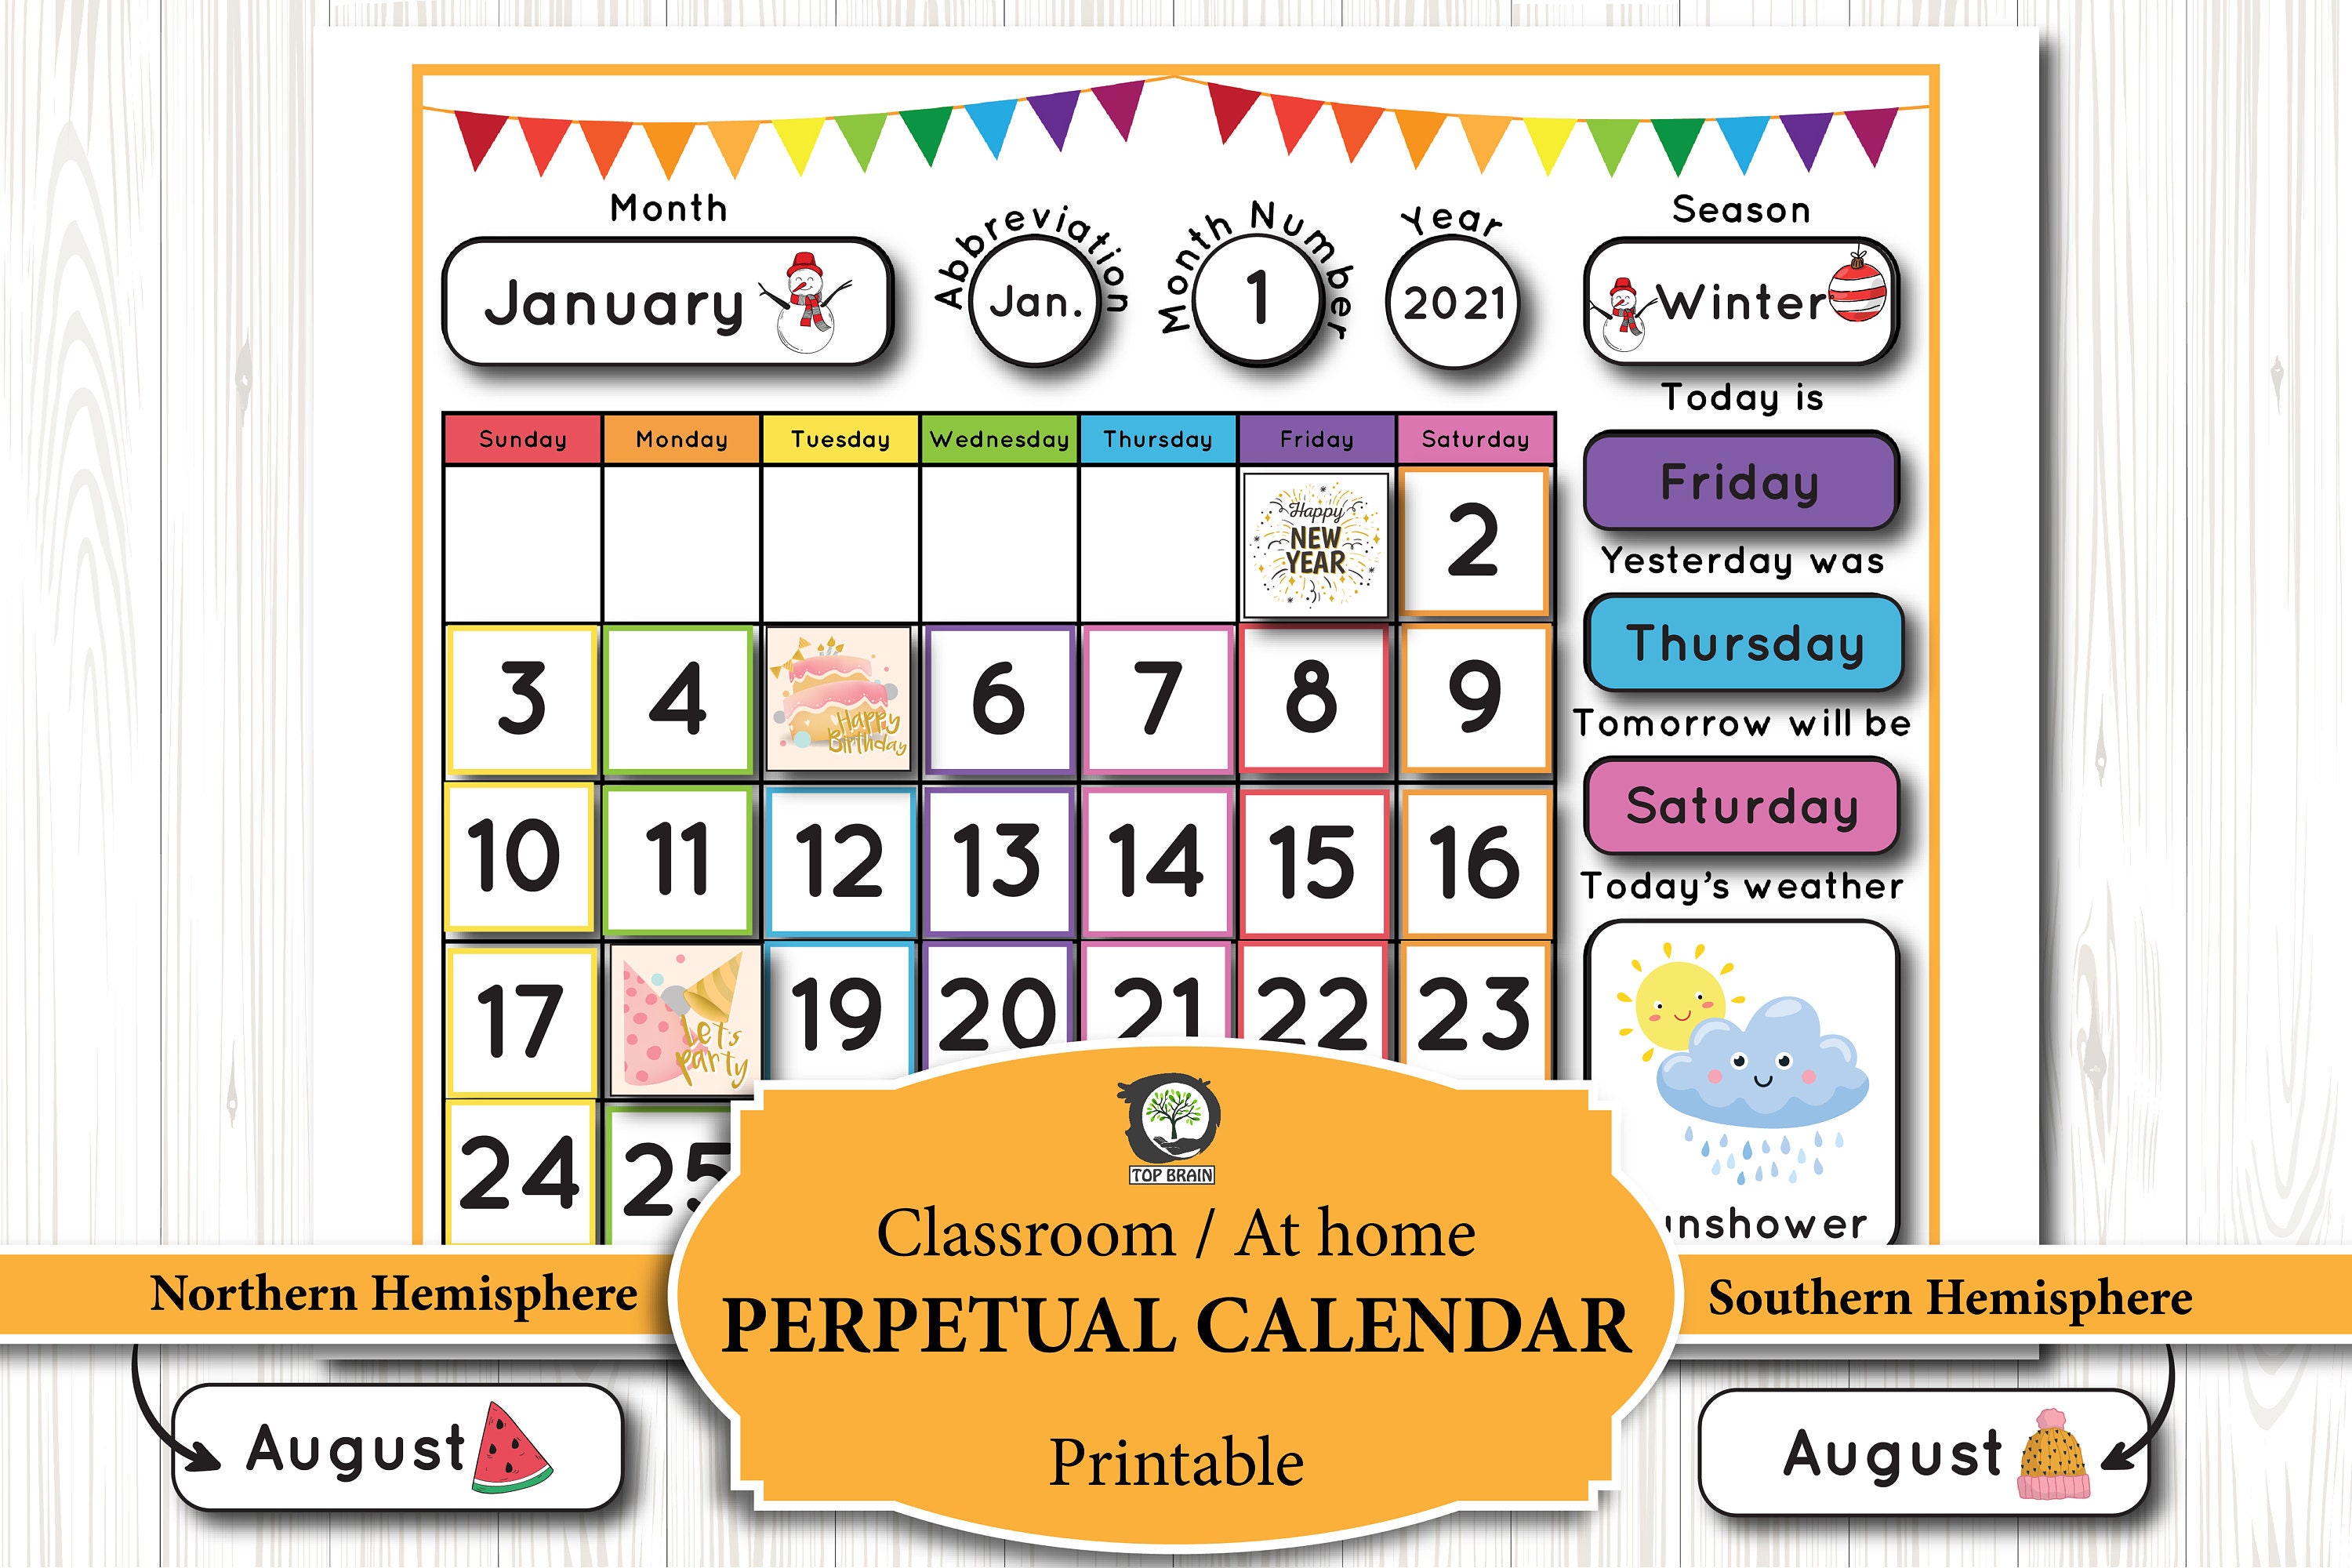 Calendario perpetuo per bambini - Kriby - Cos'è e come realizzarlo